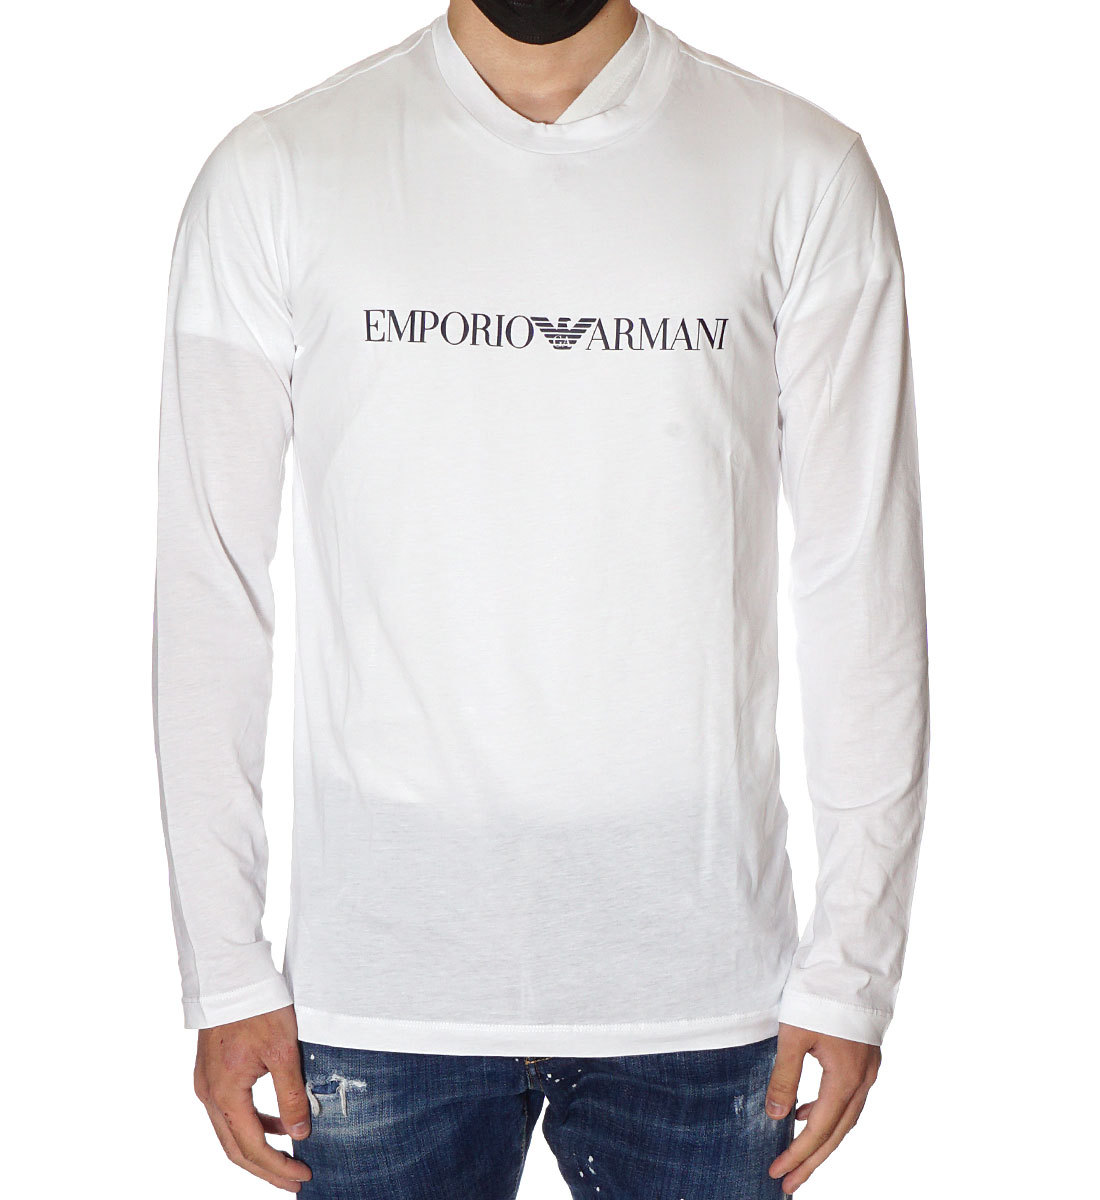 EMPORIO ARMANI ロンT Tシャツ/カットソー(七分/長袖) トップス メンズ アウトレット 激安店舗